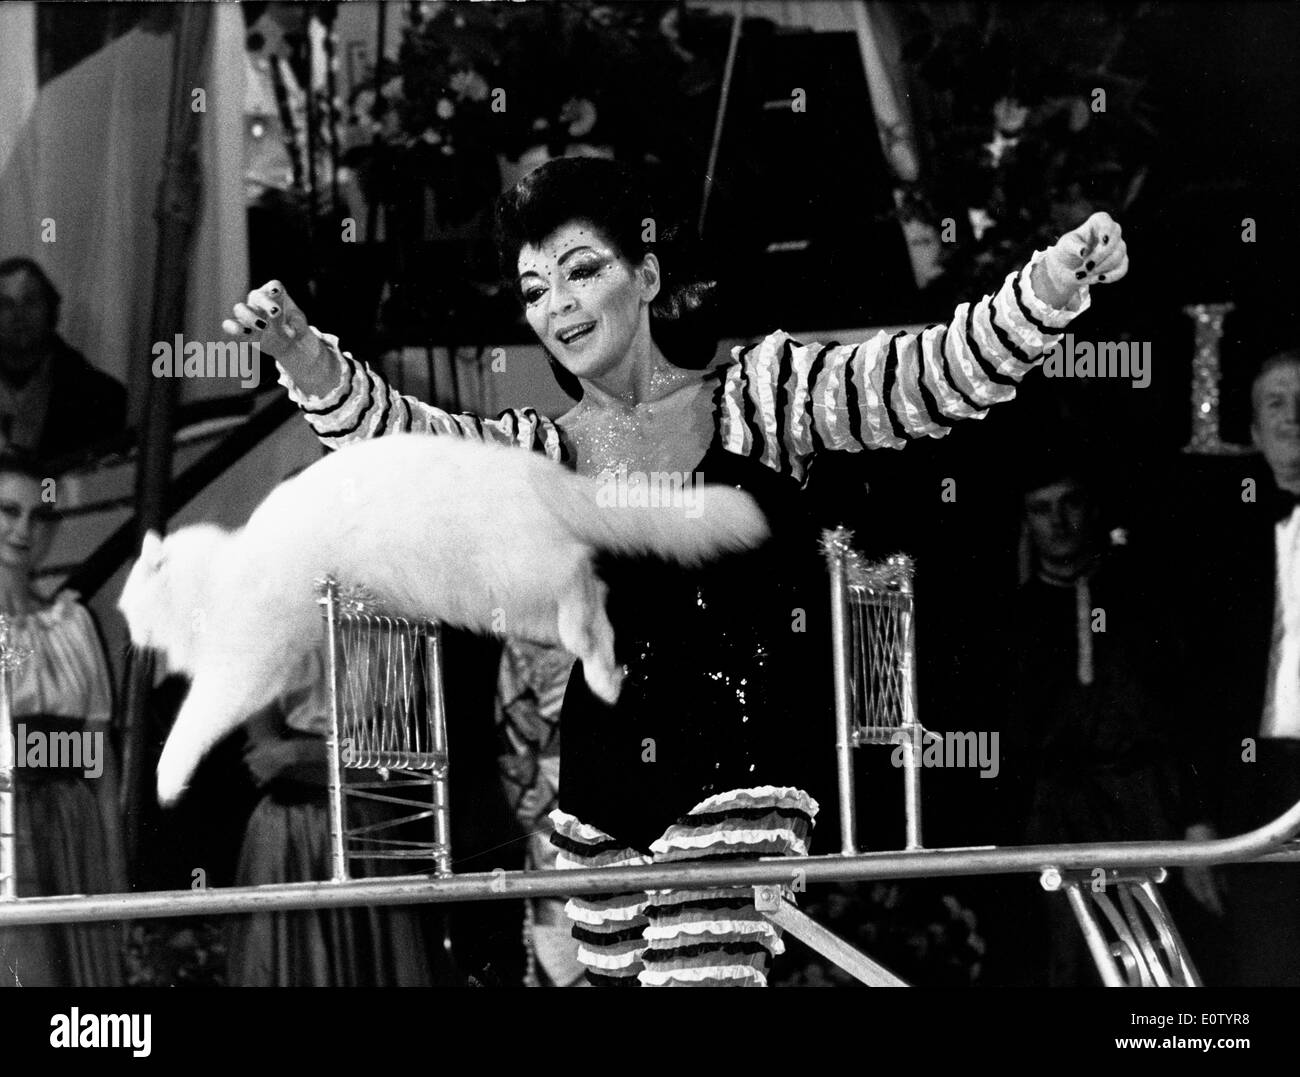 Juliette Greco in a circus scene Stock Photo